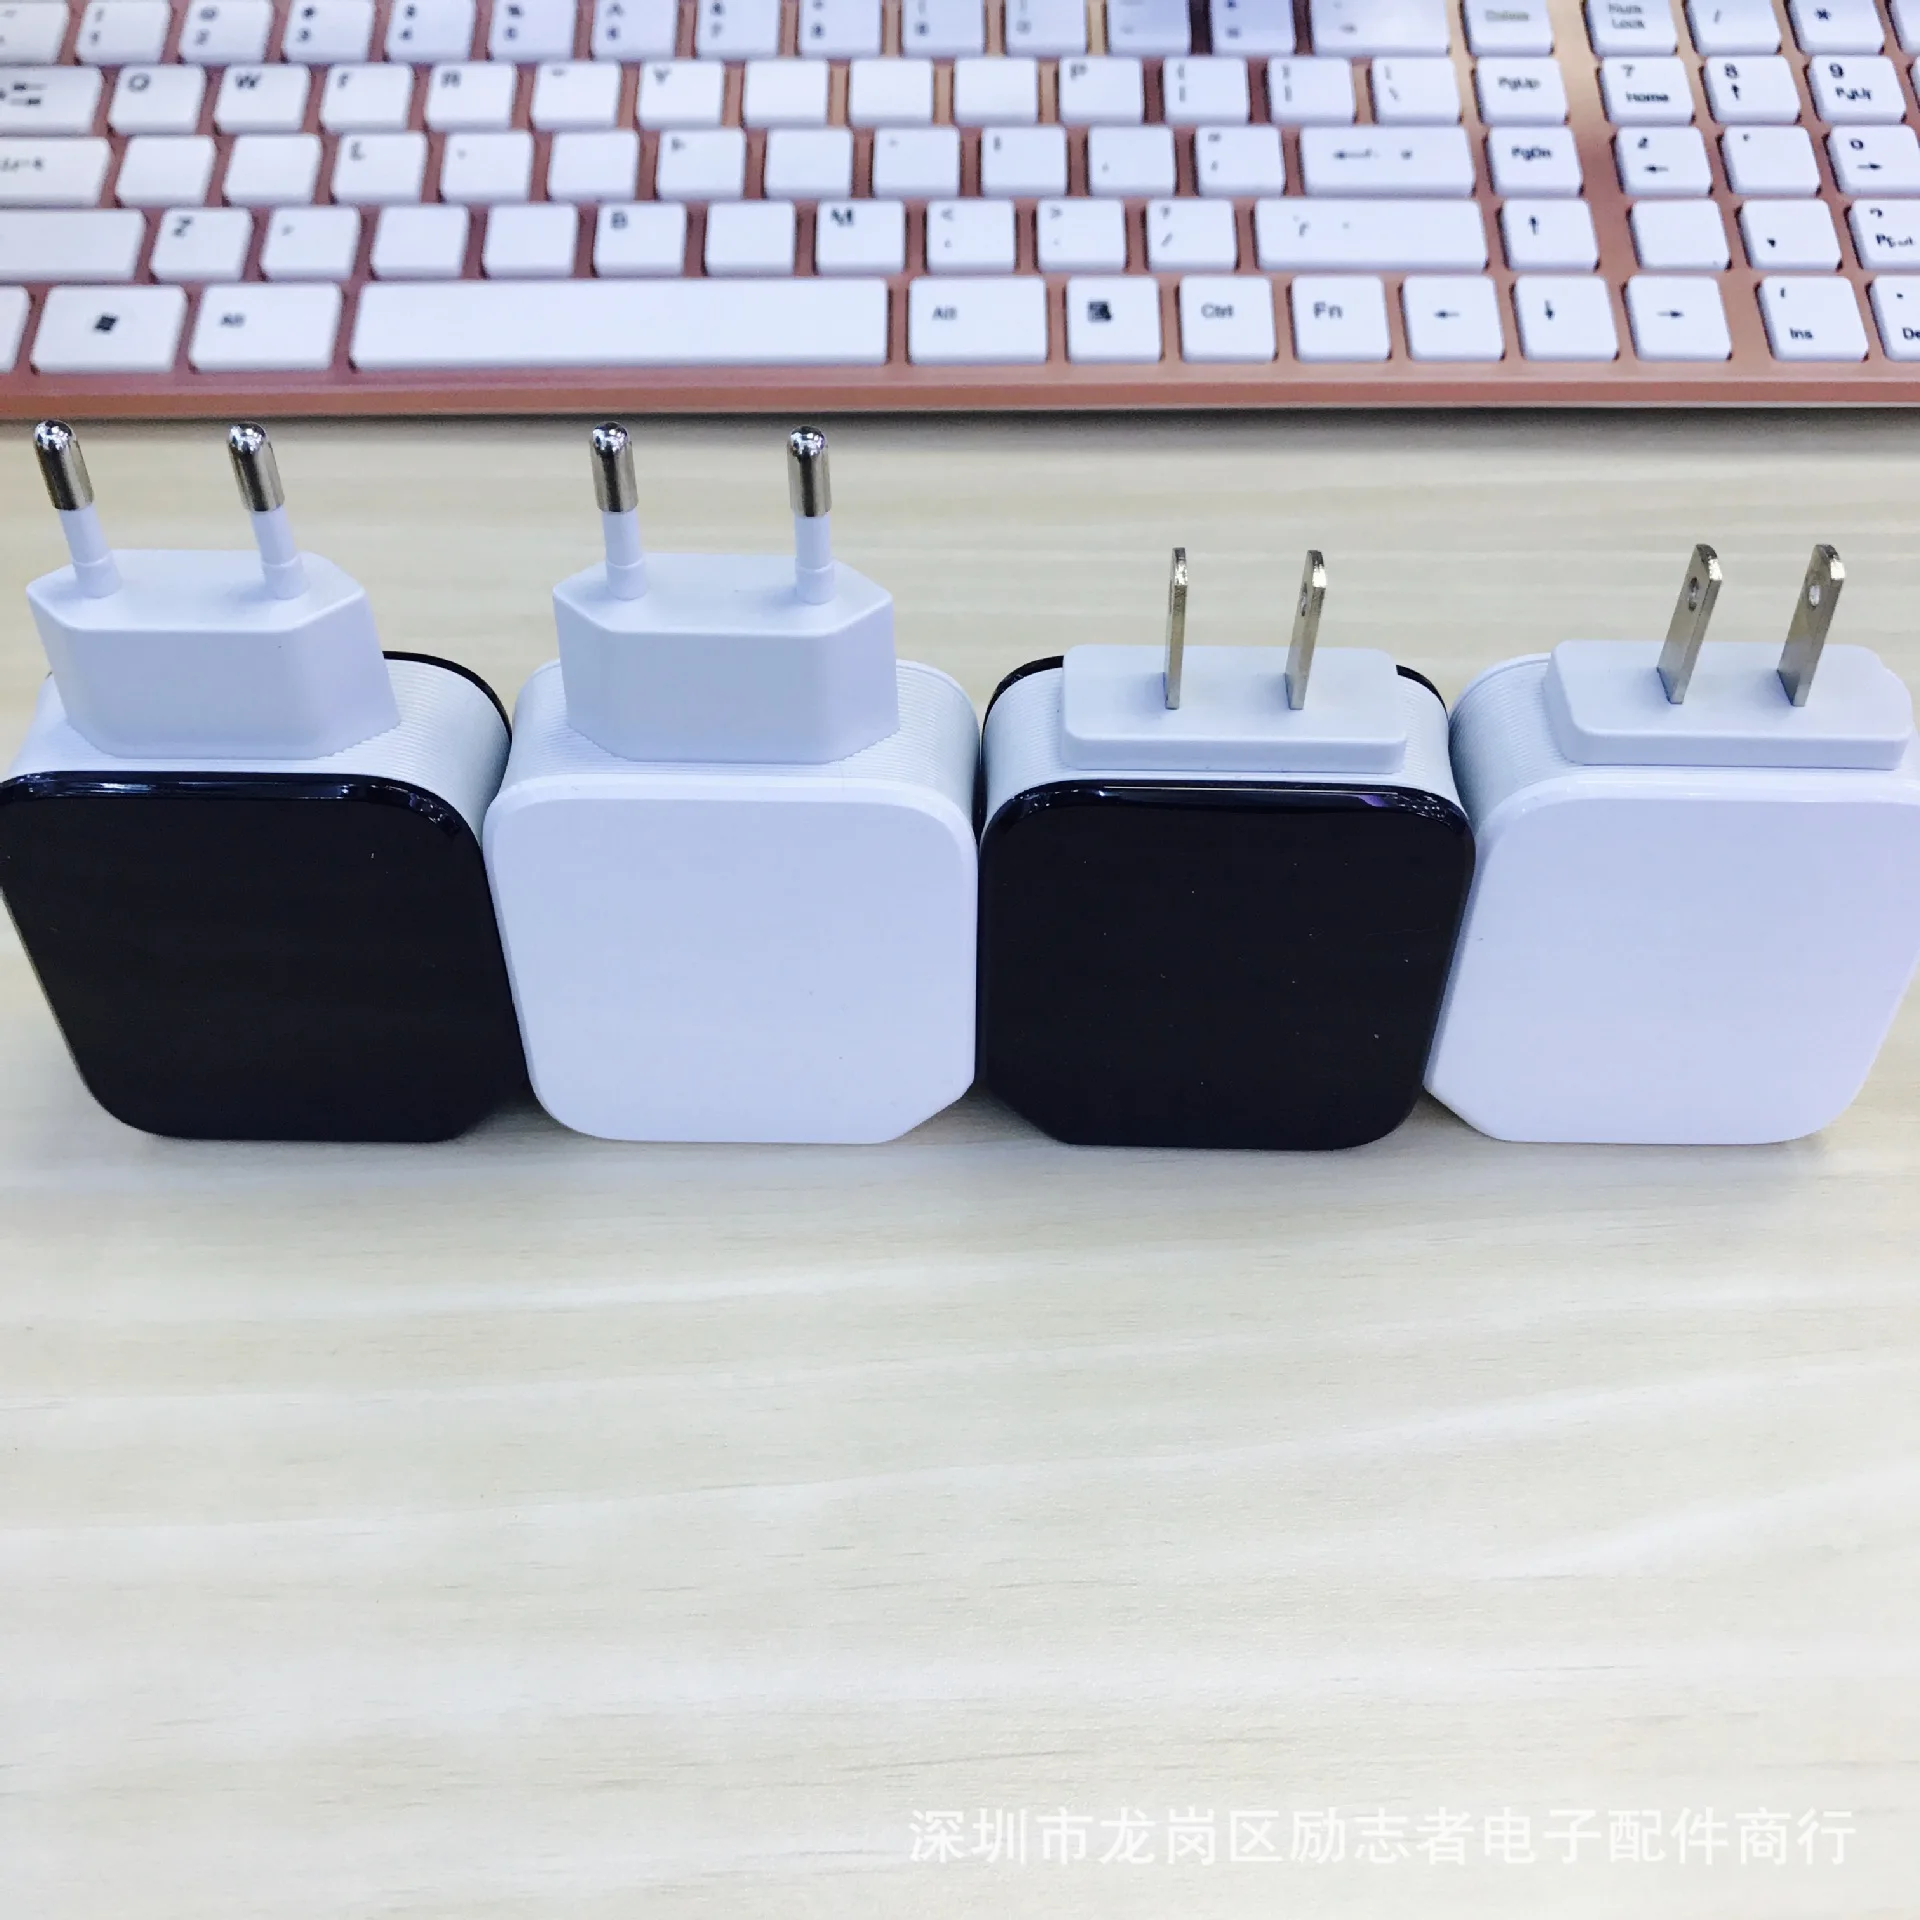 Mzxtby18W USB 5V3. 4A USB быстрое зарядное устройство QC 3,0 для iPhone iPad Xiaomi huawei samsung мобильный телефон путешествия Быстрая зарядка планшетный ПК